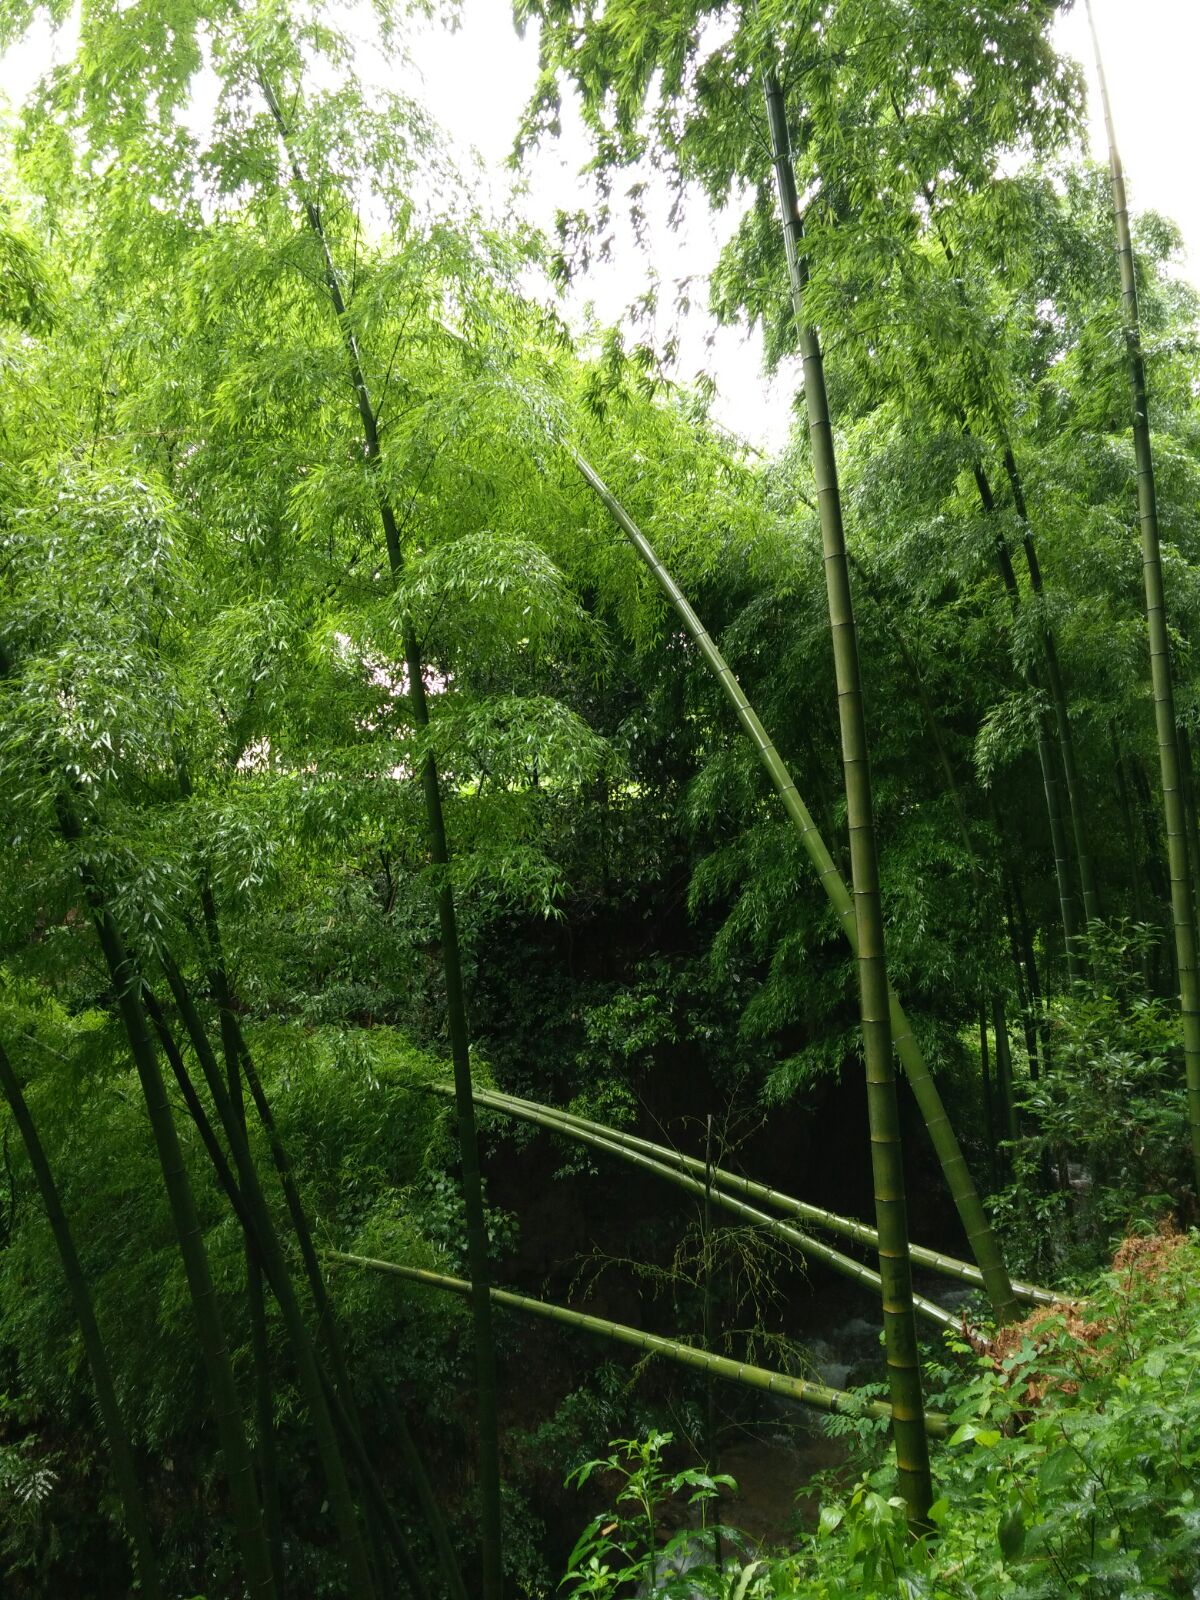 竹林深处,溪水潺潺